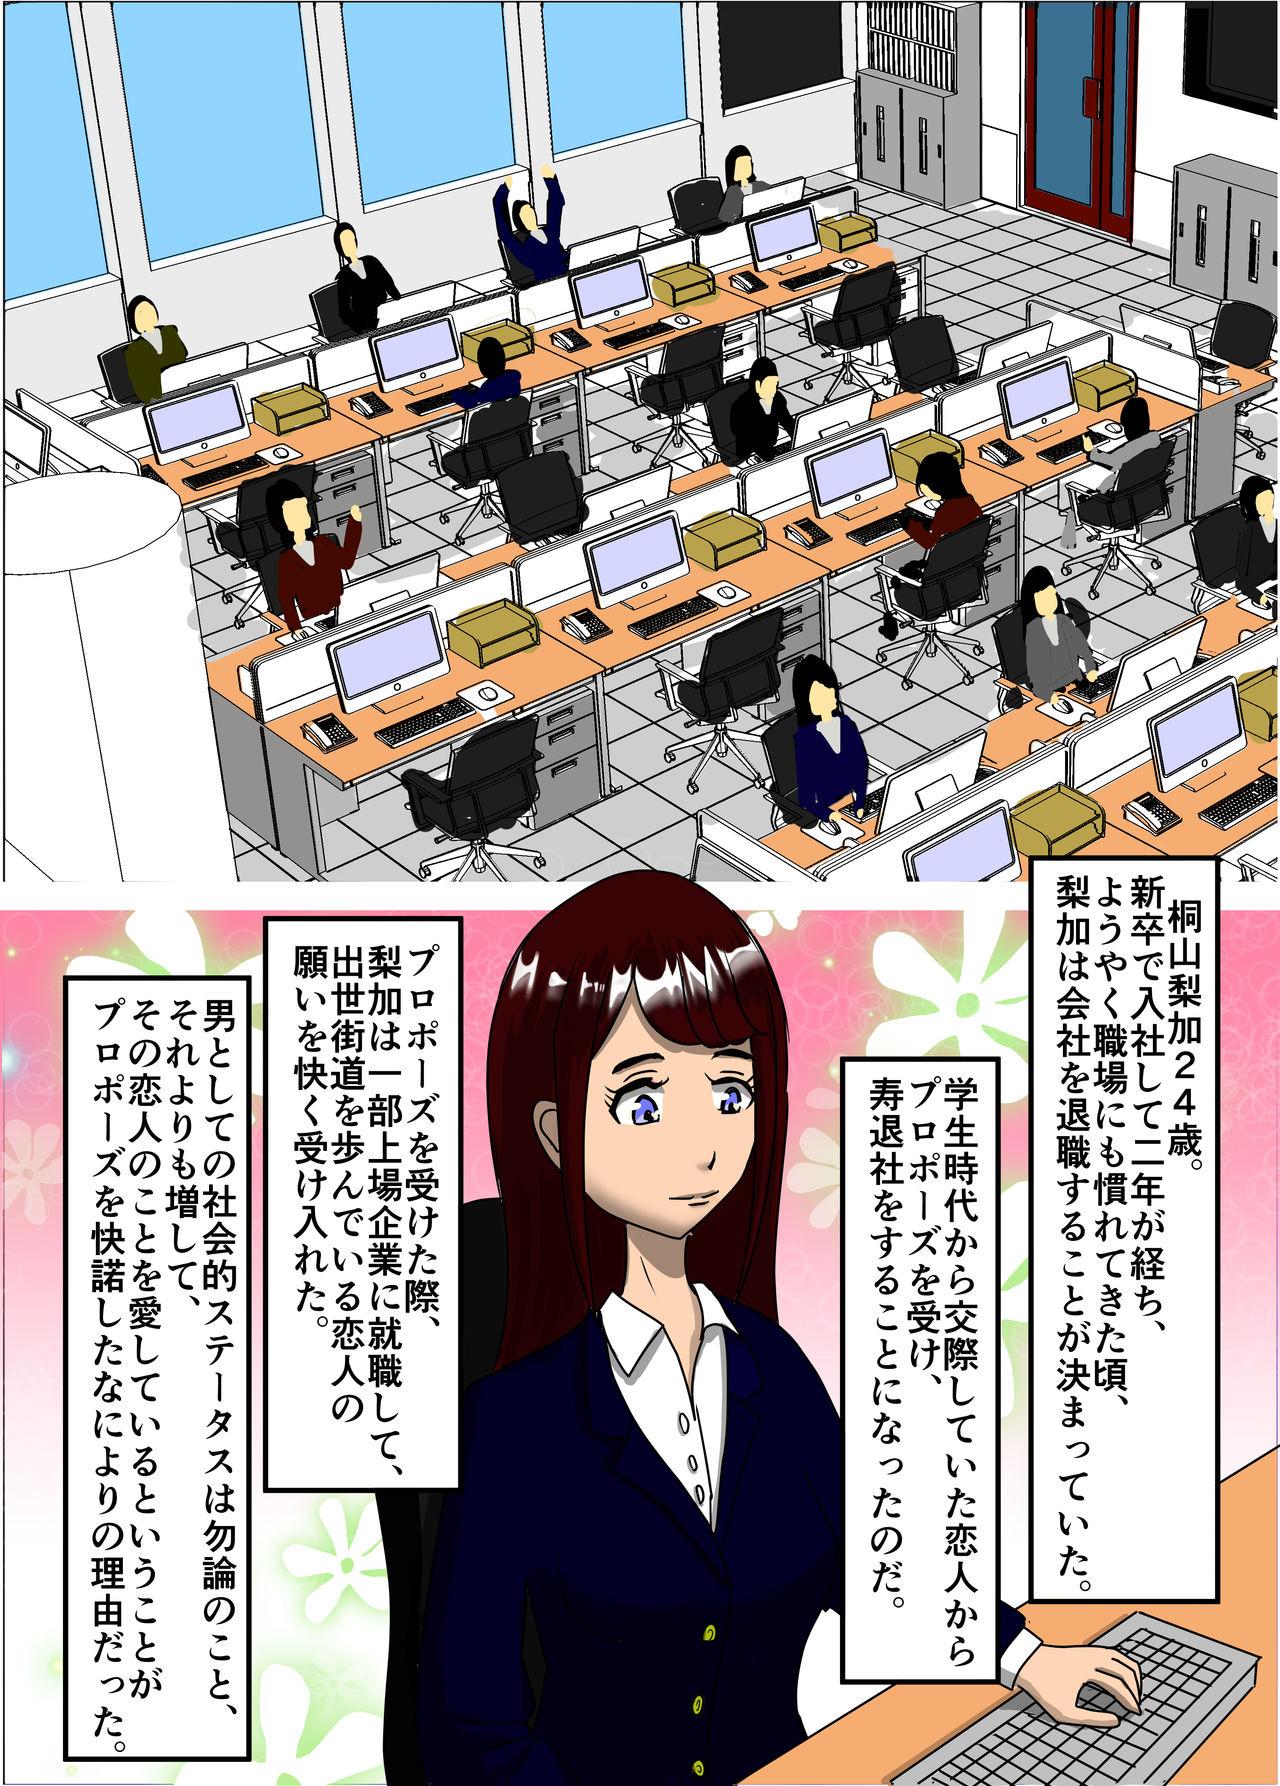 Titten Kekkon Madjika no Bijin OL o Kyōsei AV Debyū sa seru Monogatari Class Room - Page 3